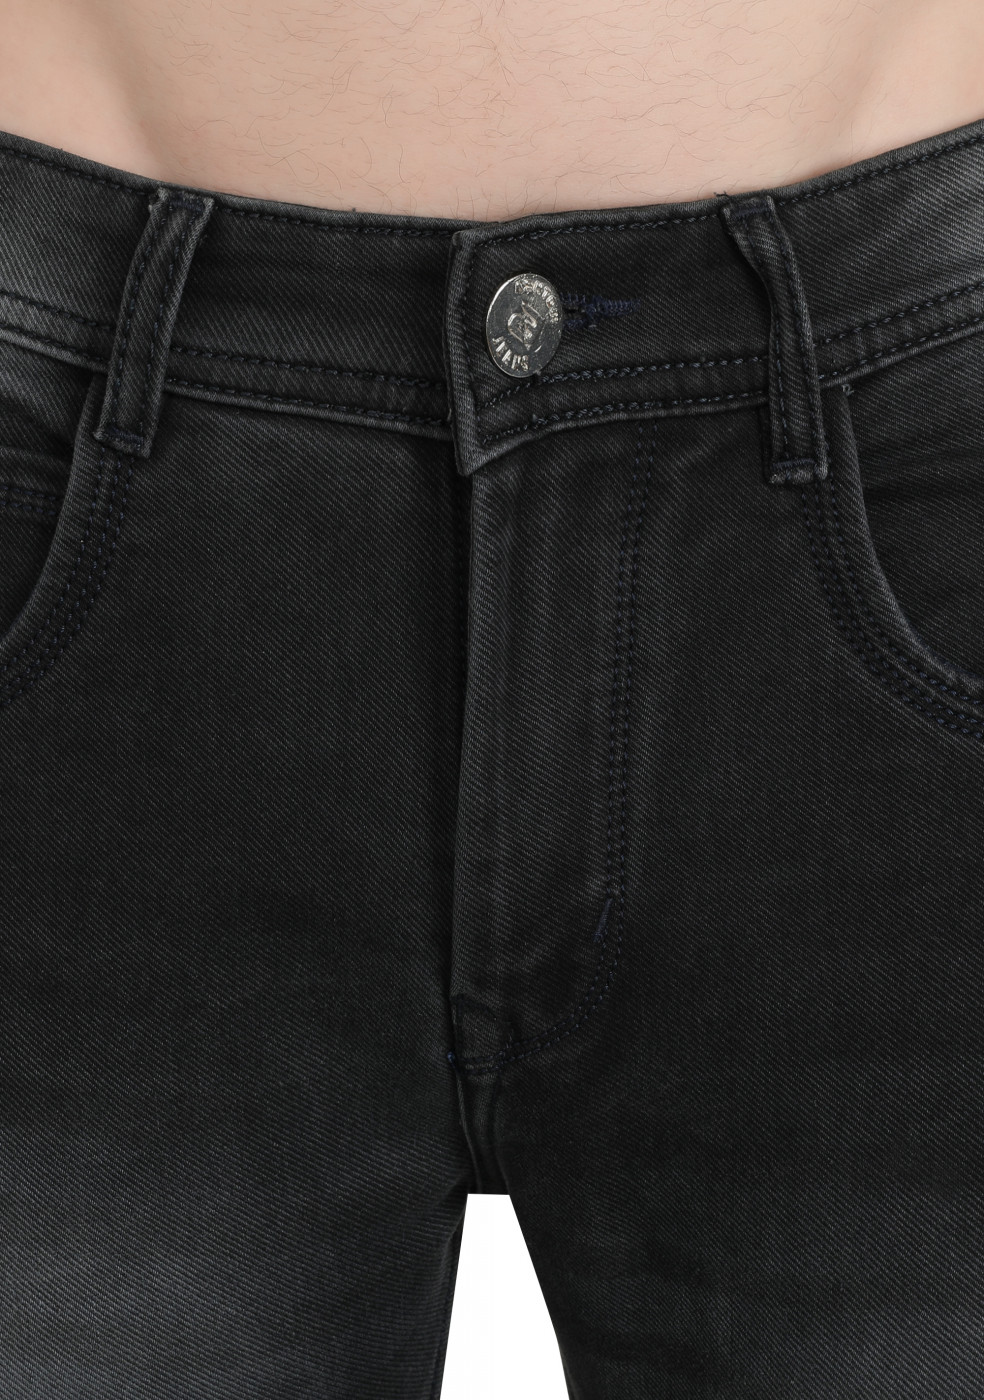 Dark Gray Trendy Jeans For Men